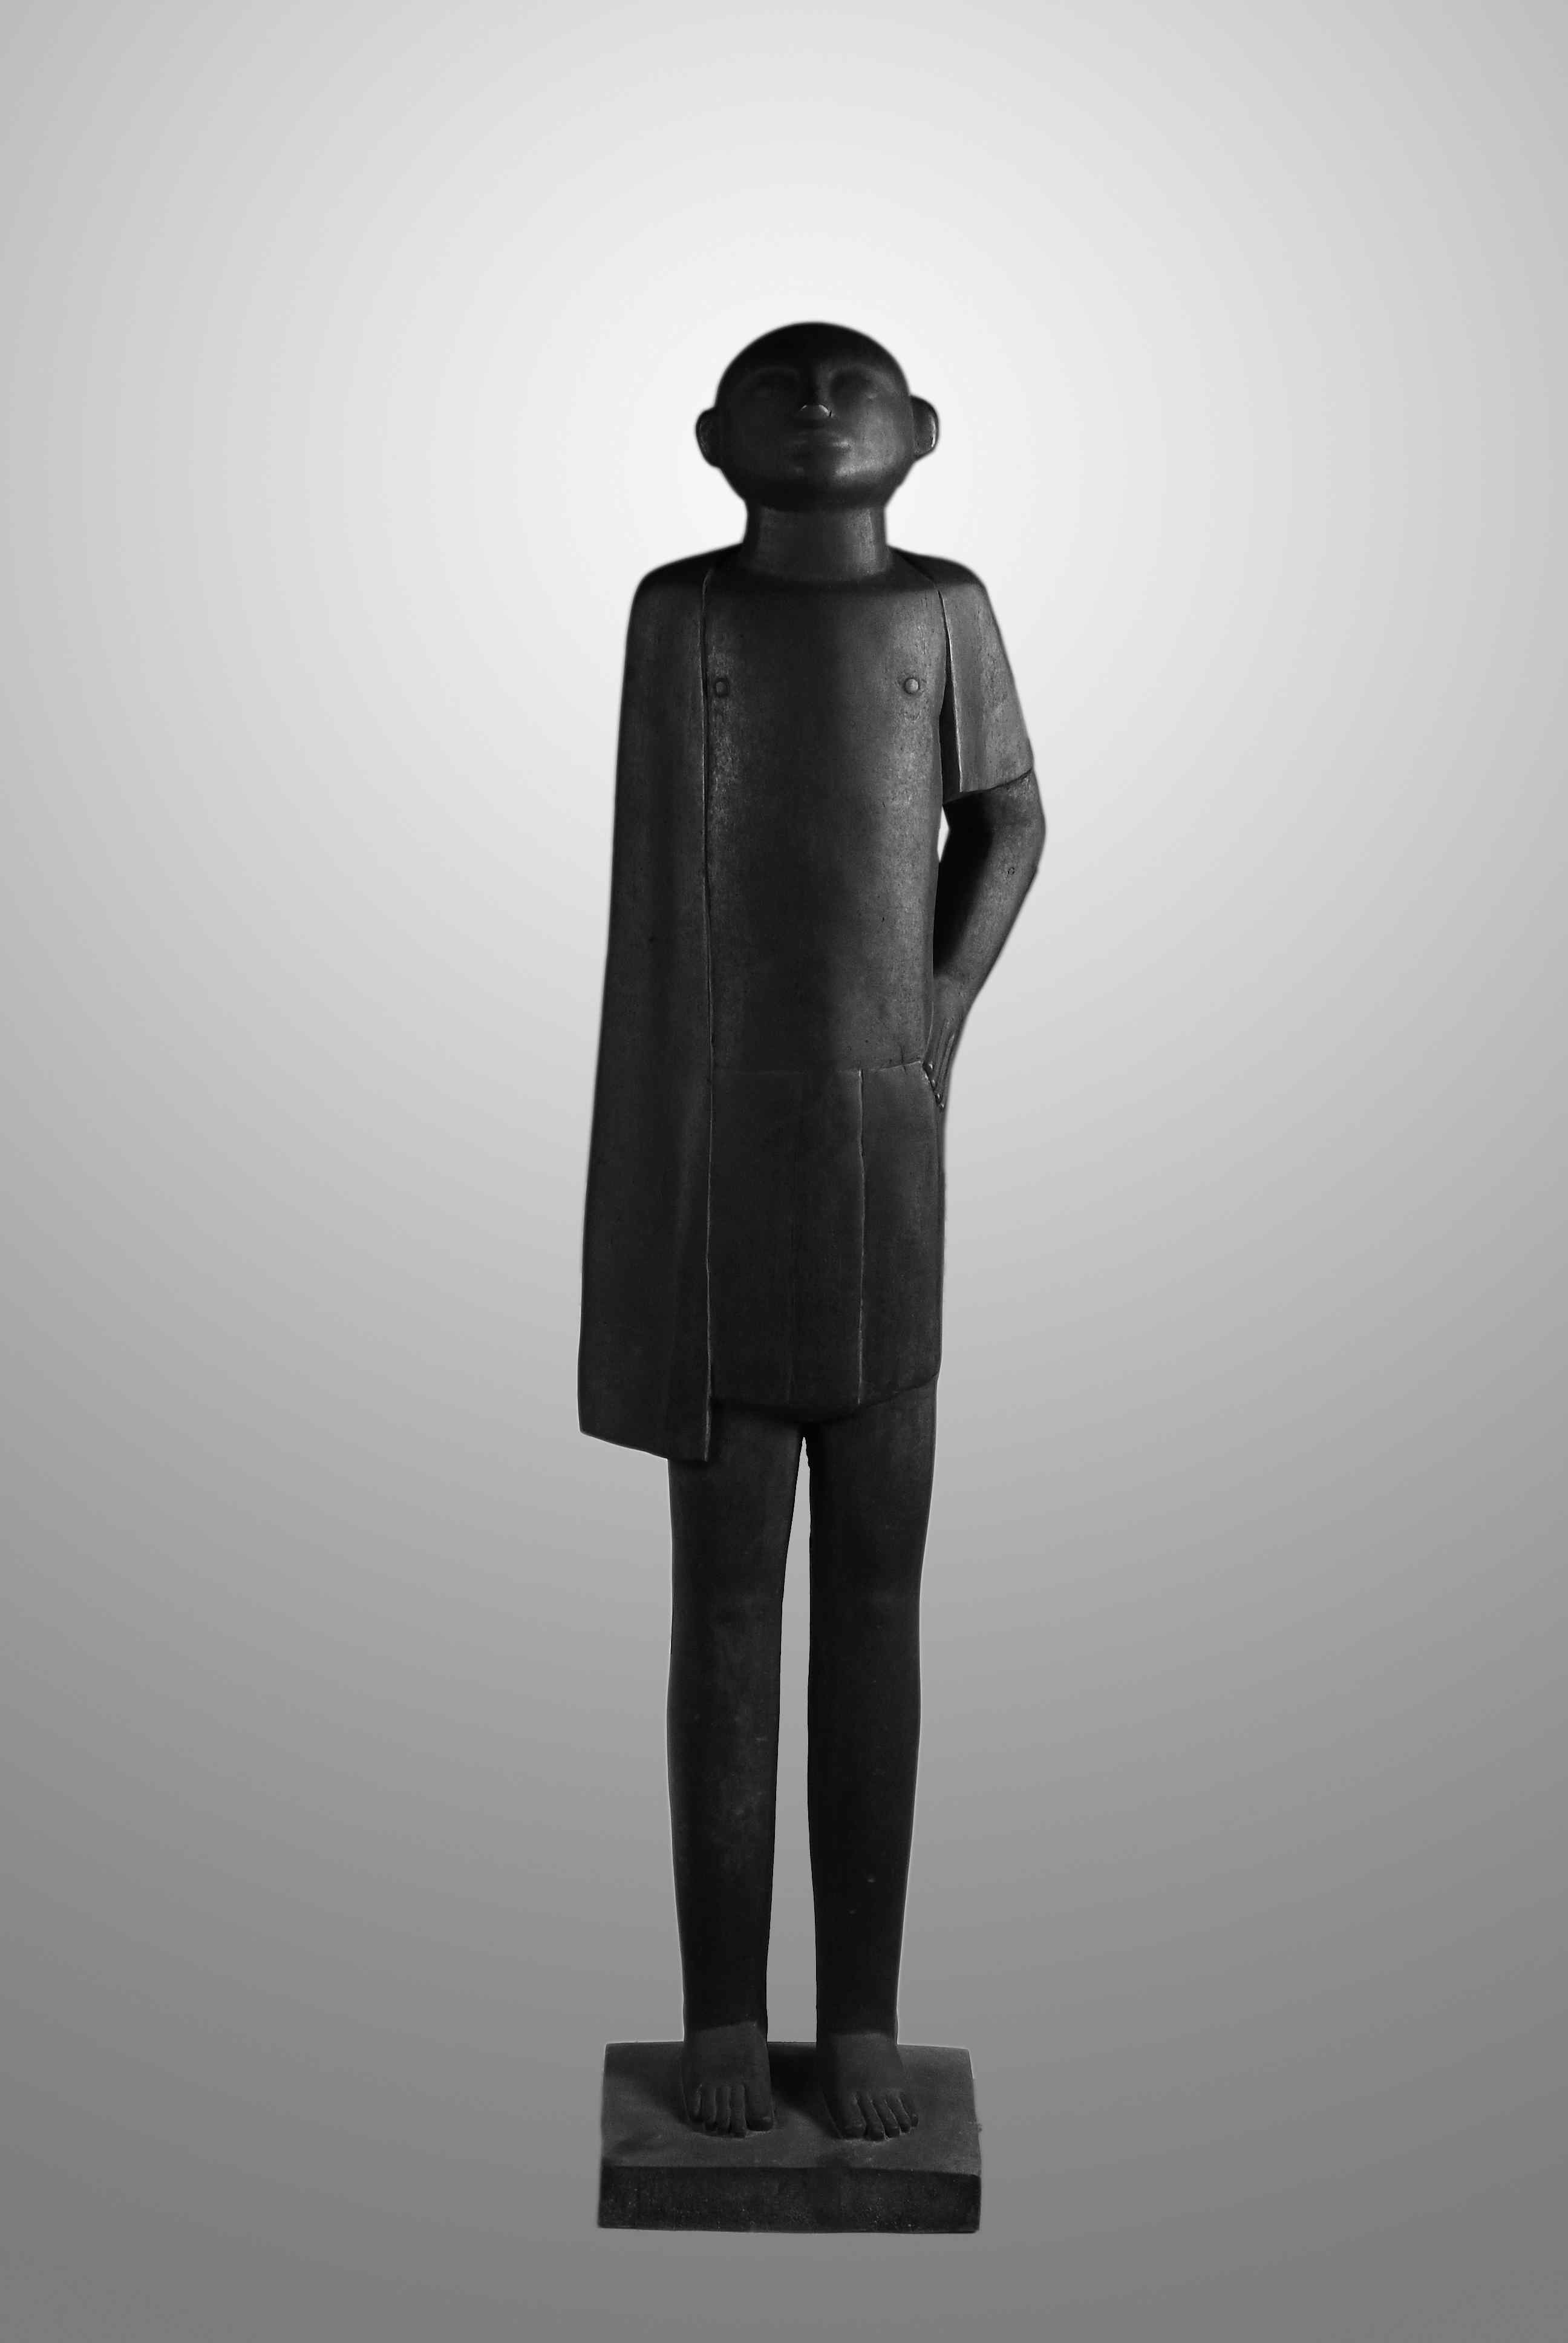 The Worker, bronze, 148 x 30 x 26 cm